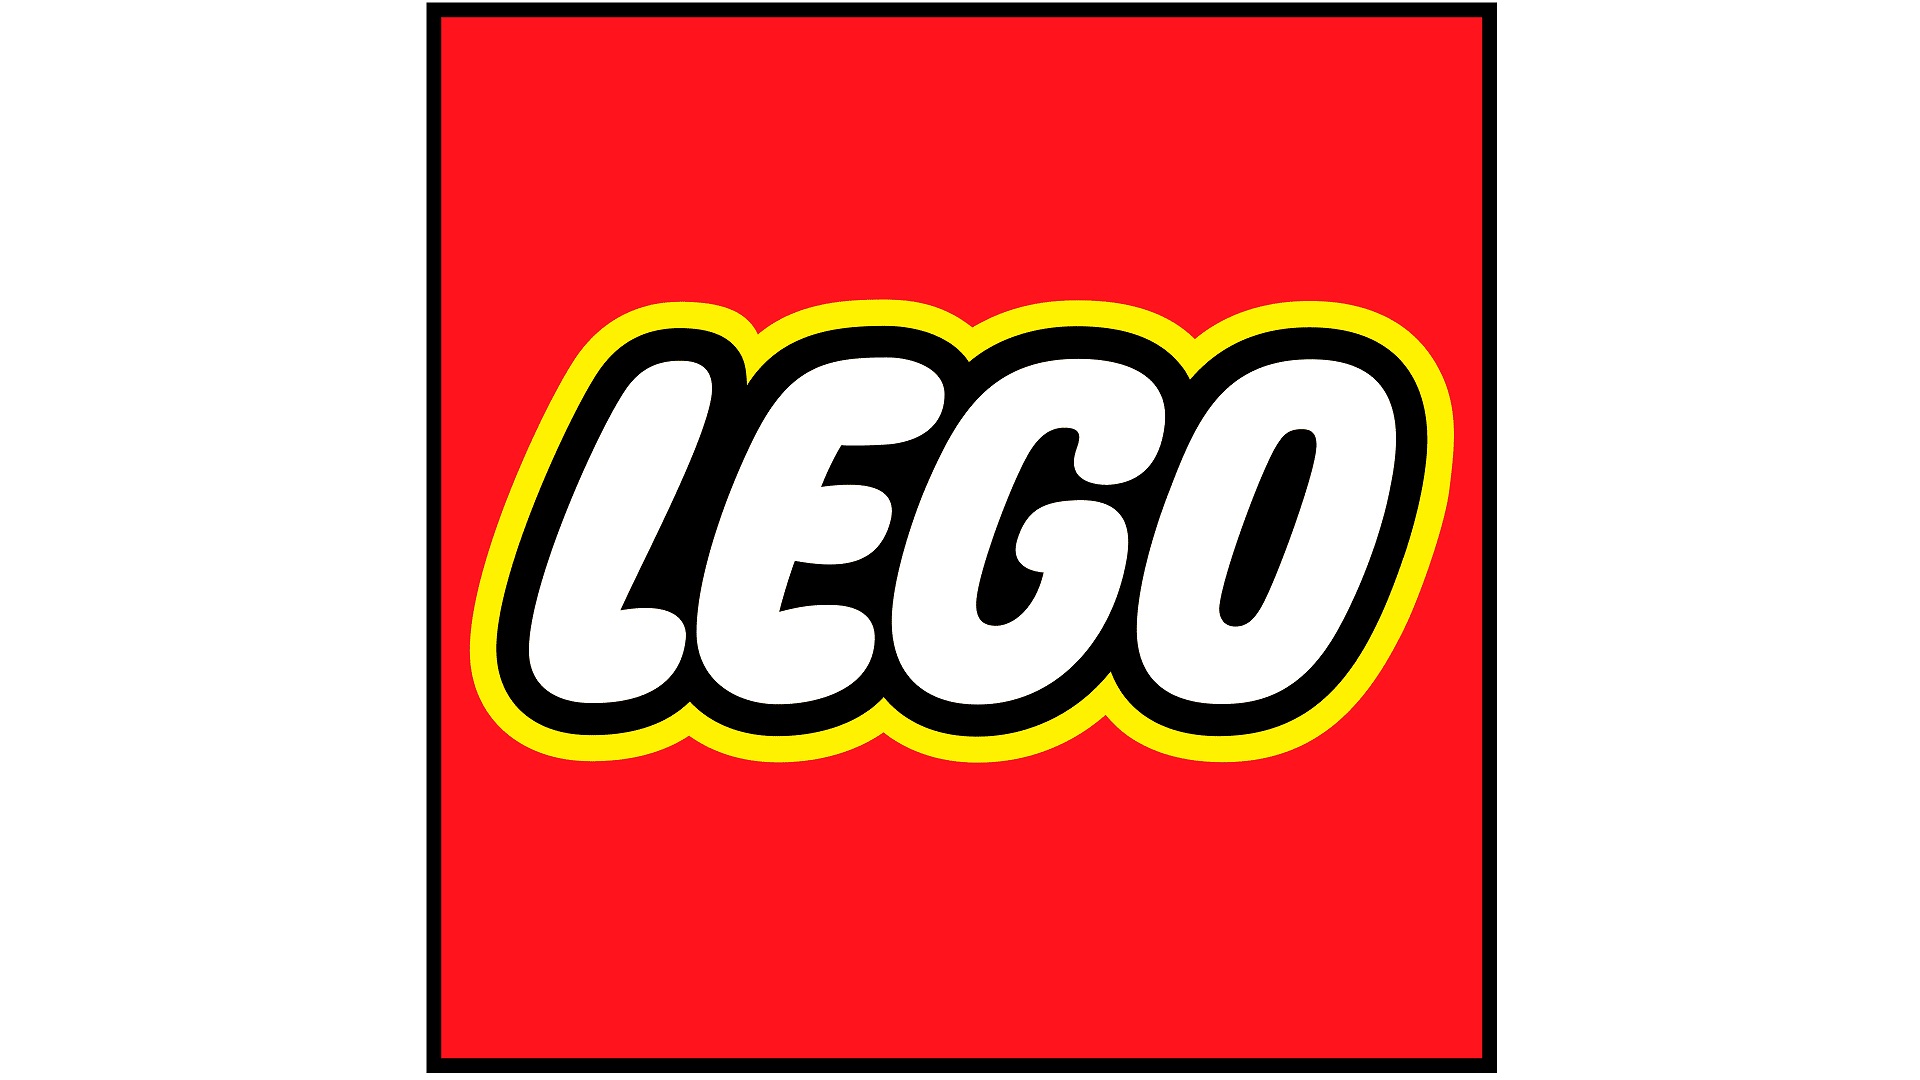 LEGO 2K Goooal! ได้รับการจัดเรทในประเทศไต้หวันแล้วเช่นกัน